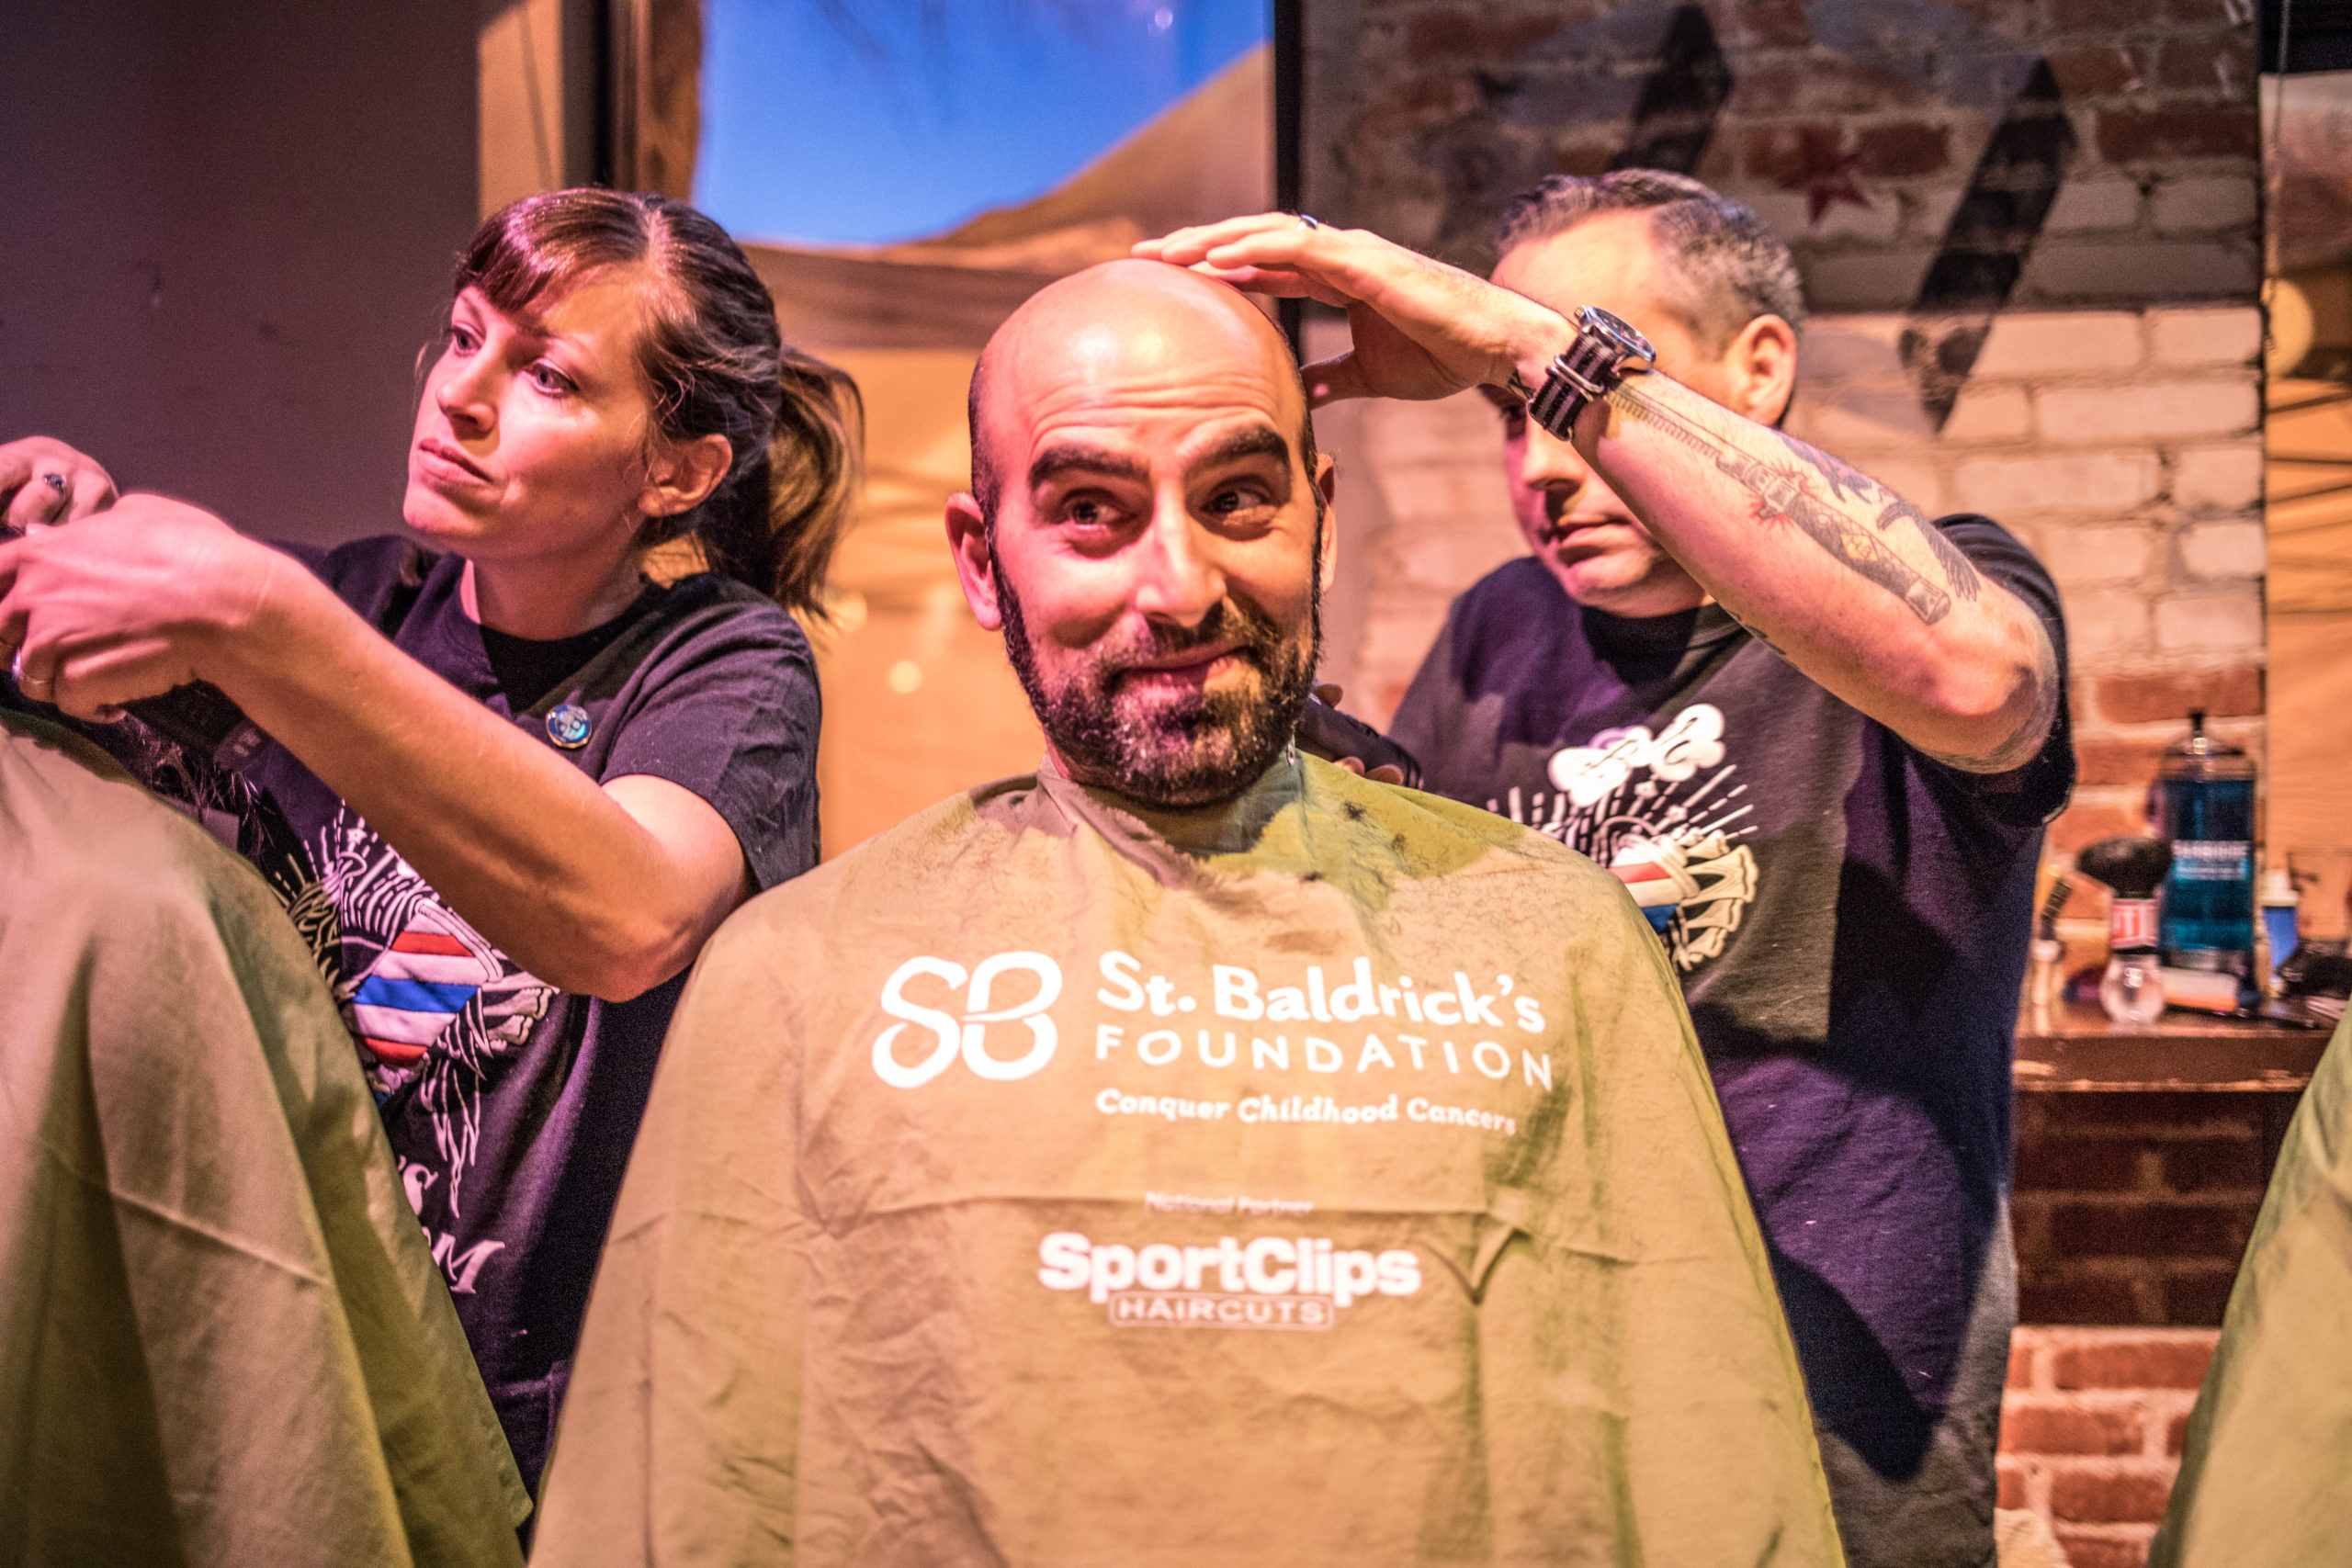 St. Baldrick’s Shave Day